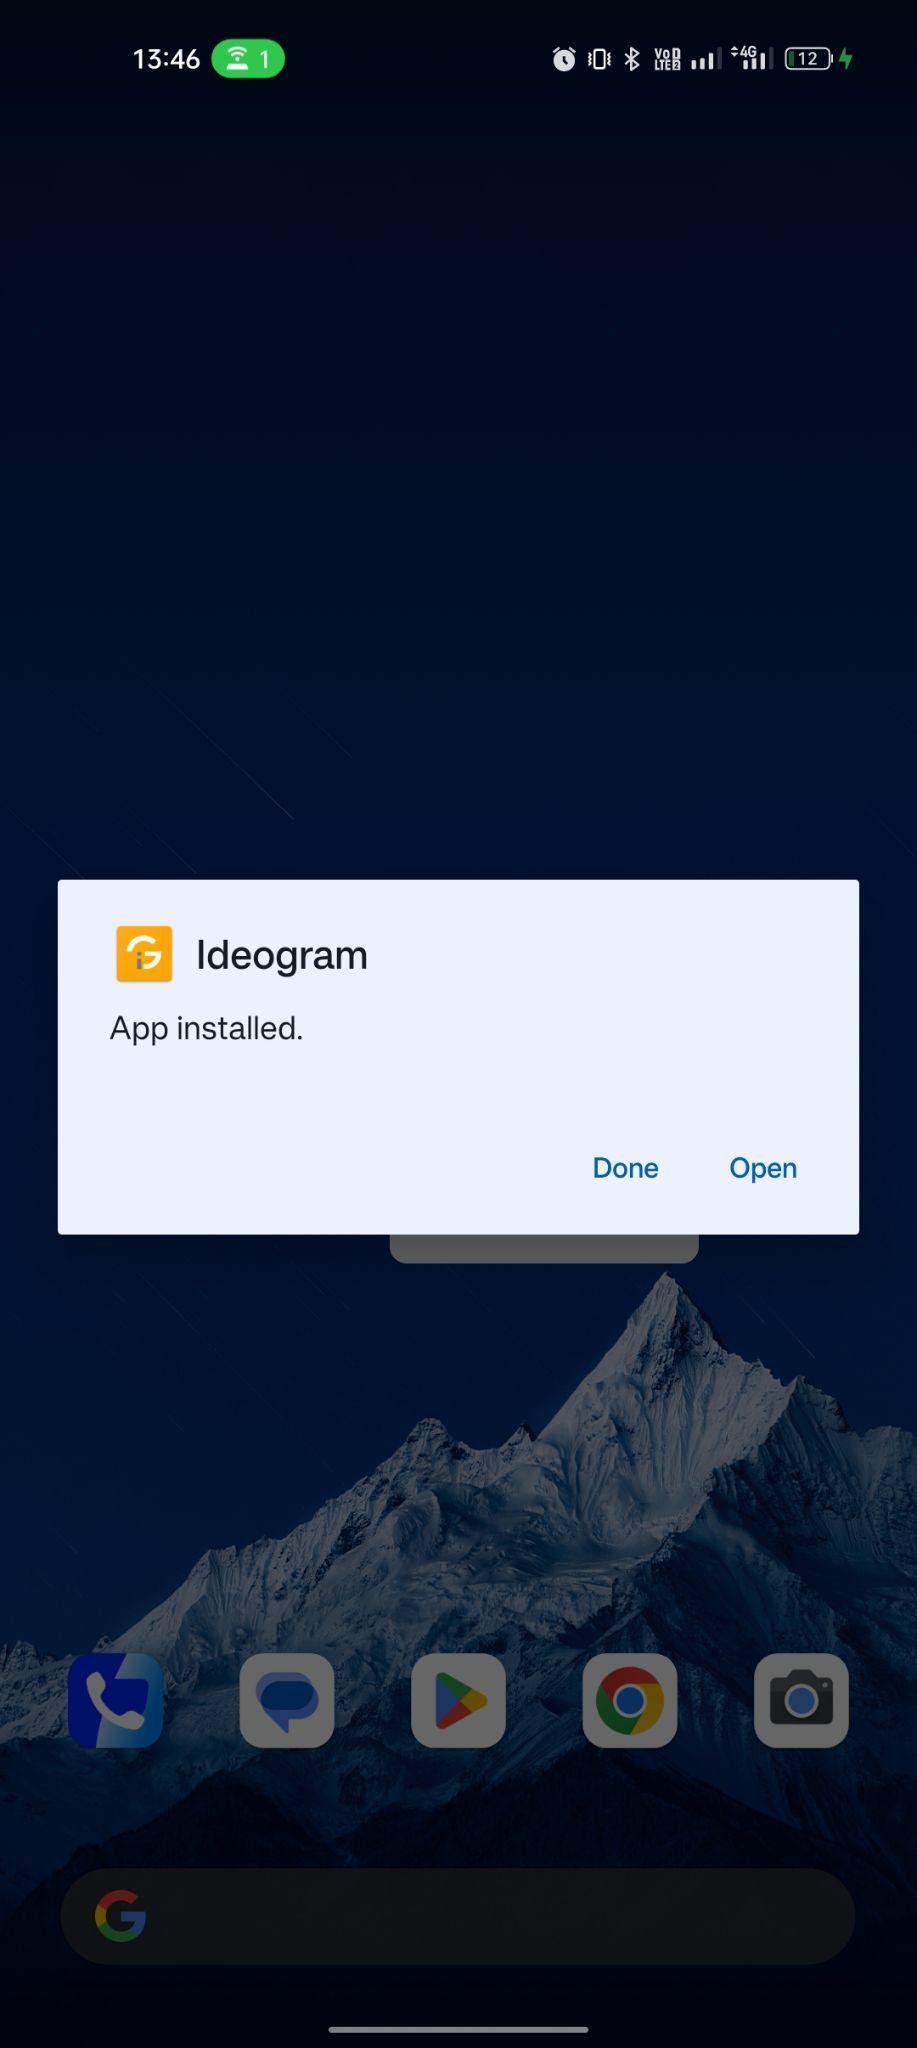 Ideogram AI apk installed